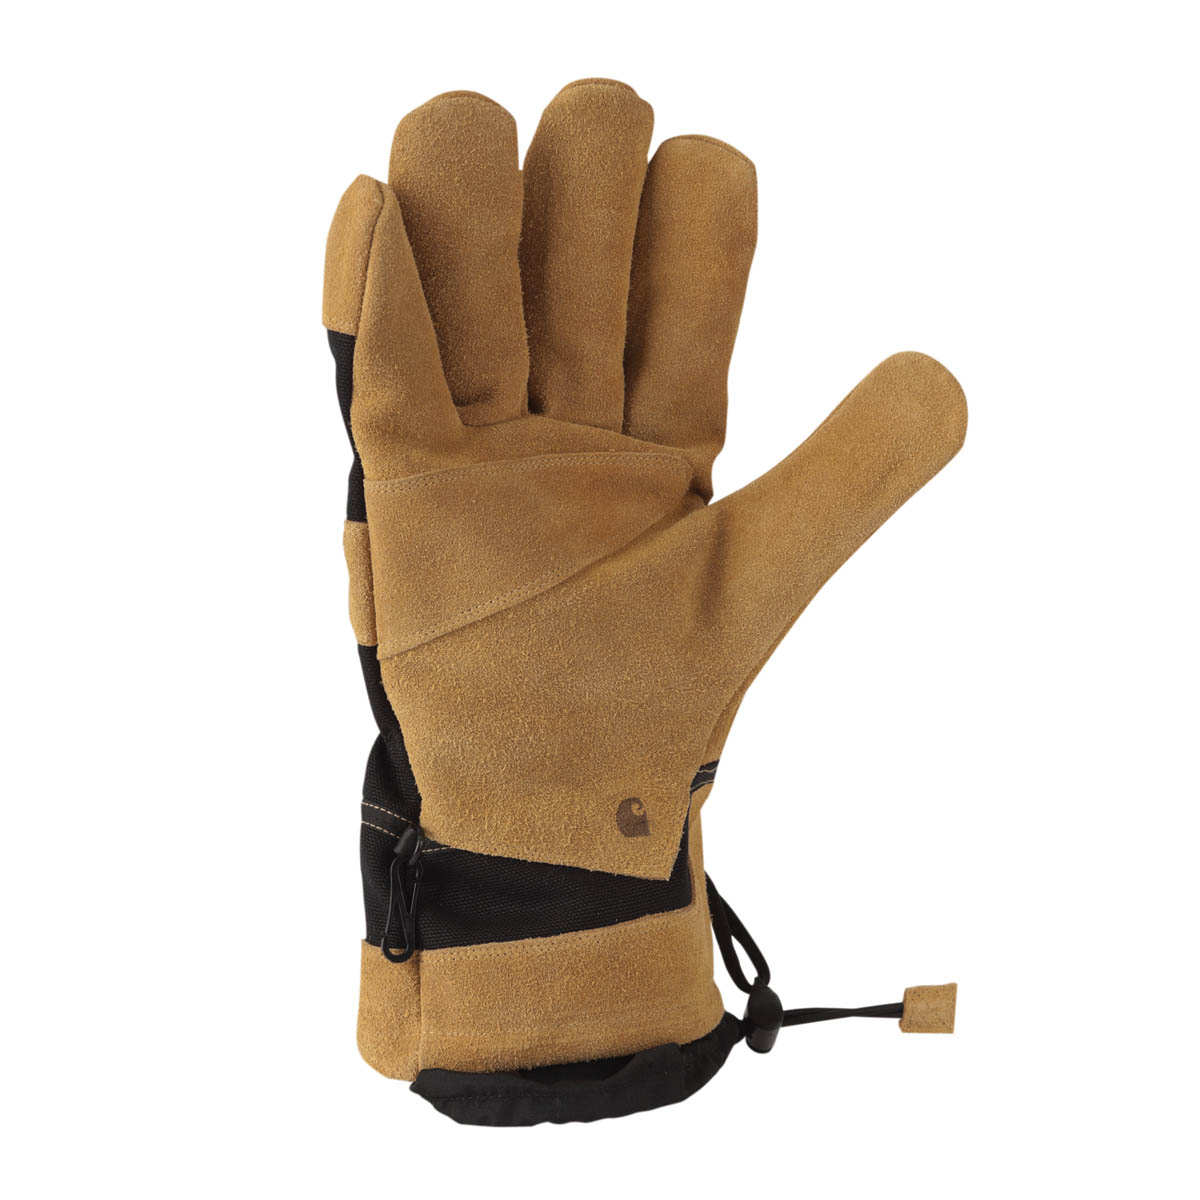 Carhartt Men's Dozer Glove Safety Cuff Gauntlet